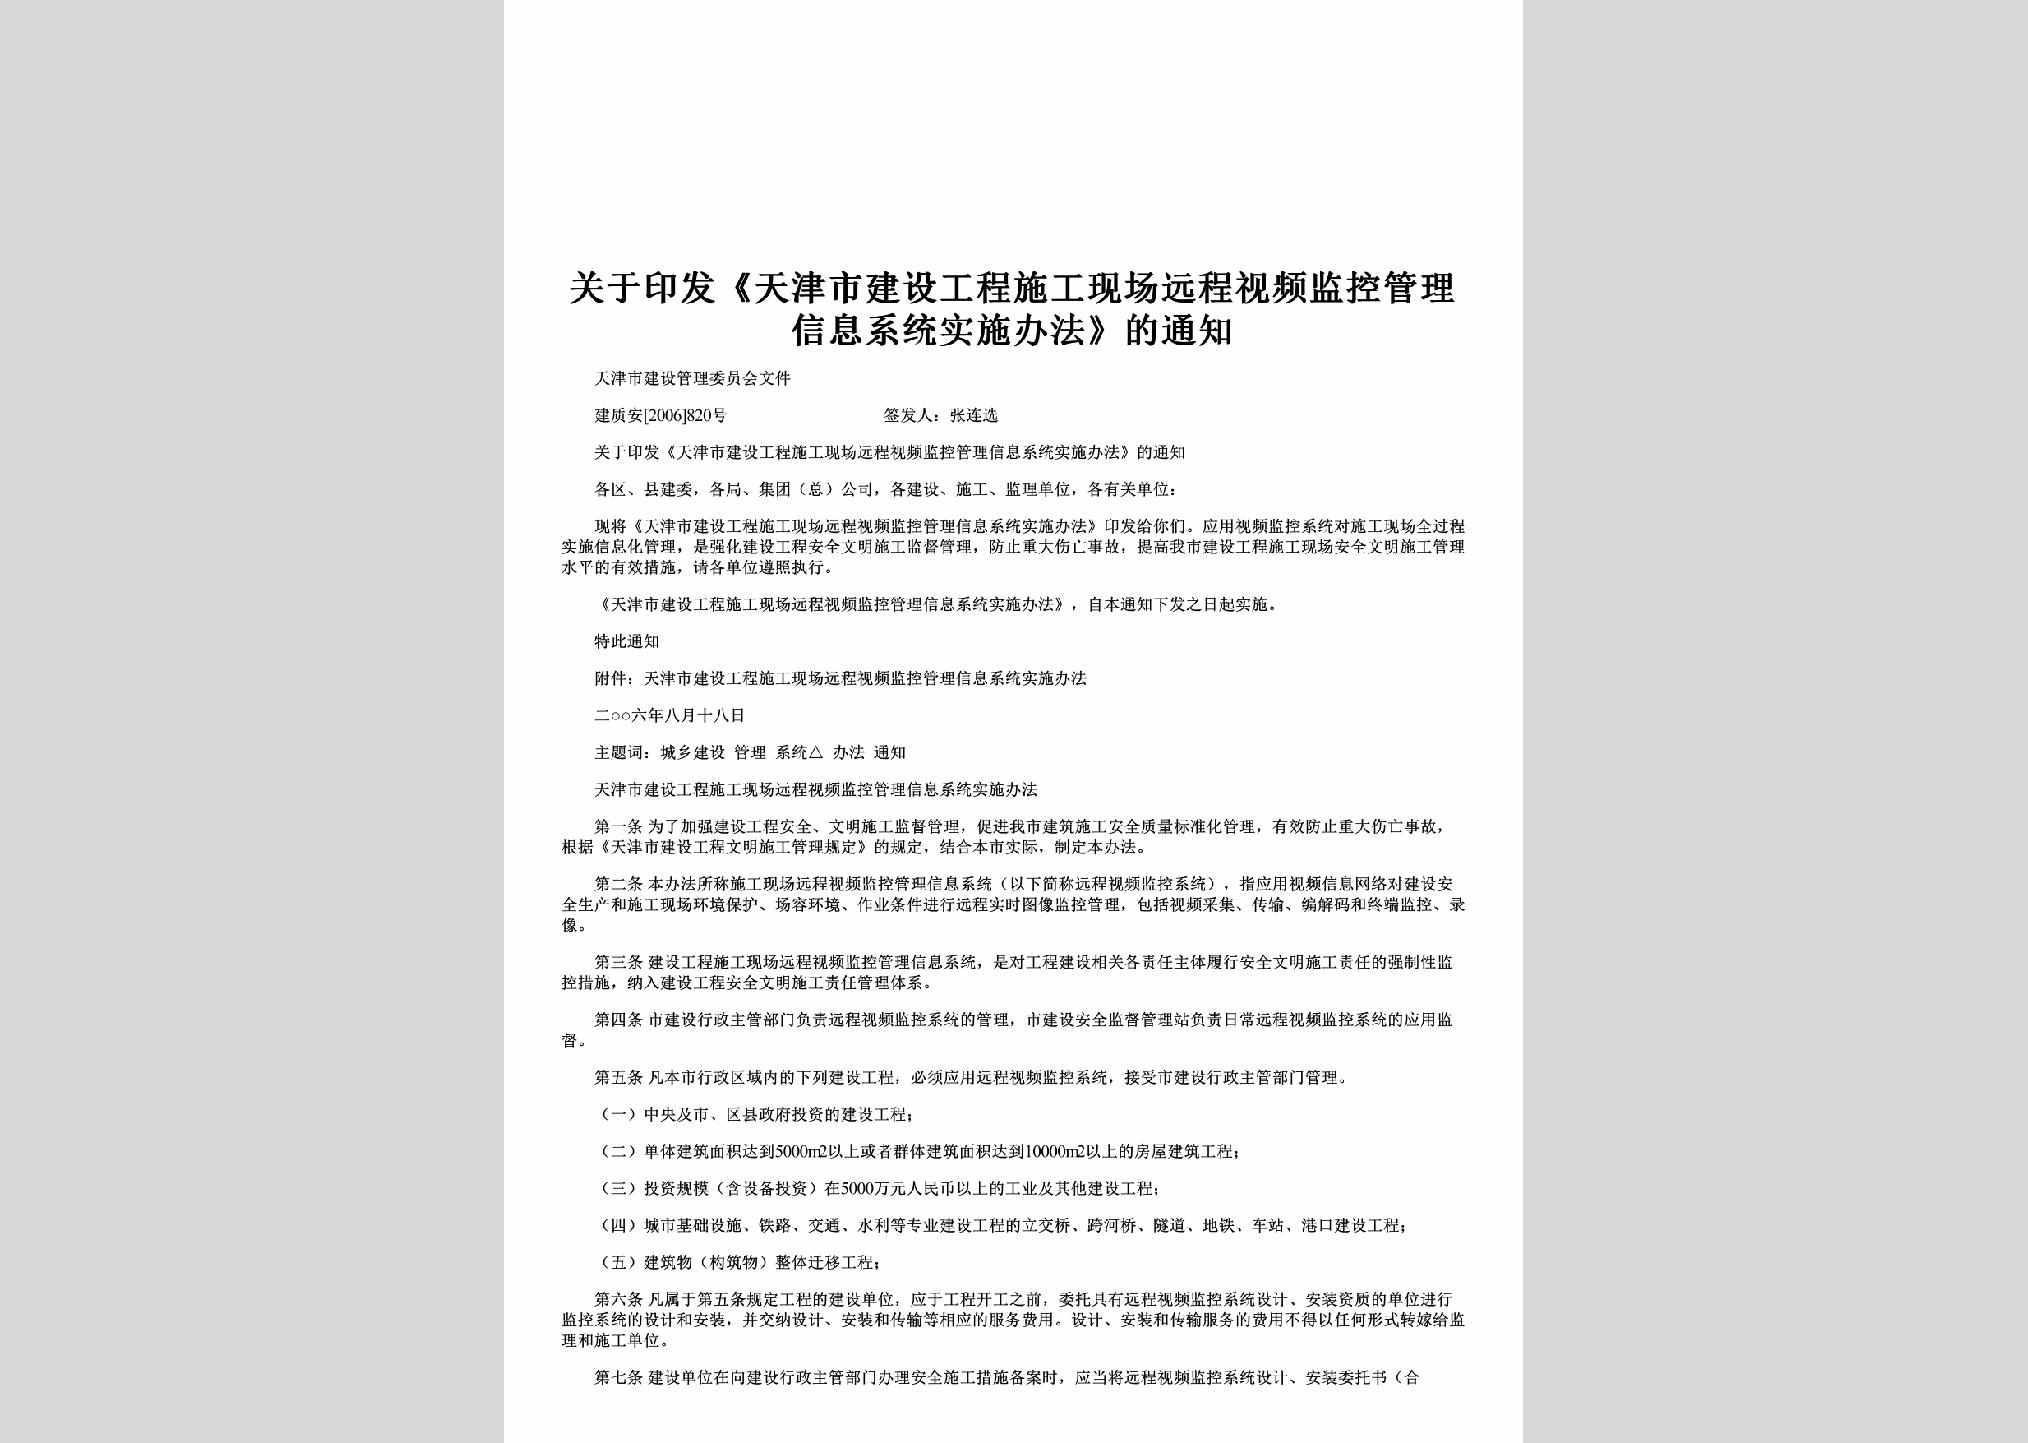 建质安[2006]820号：关于印发《天津市建设工程施工现场远程视频监控管理信息系统实施办法》的通知